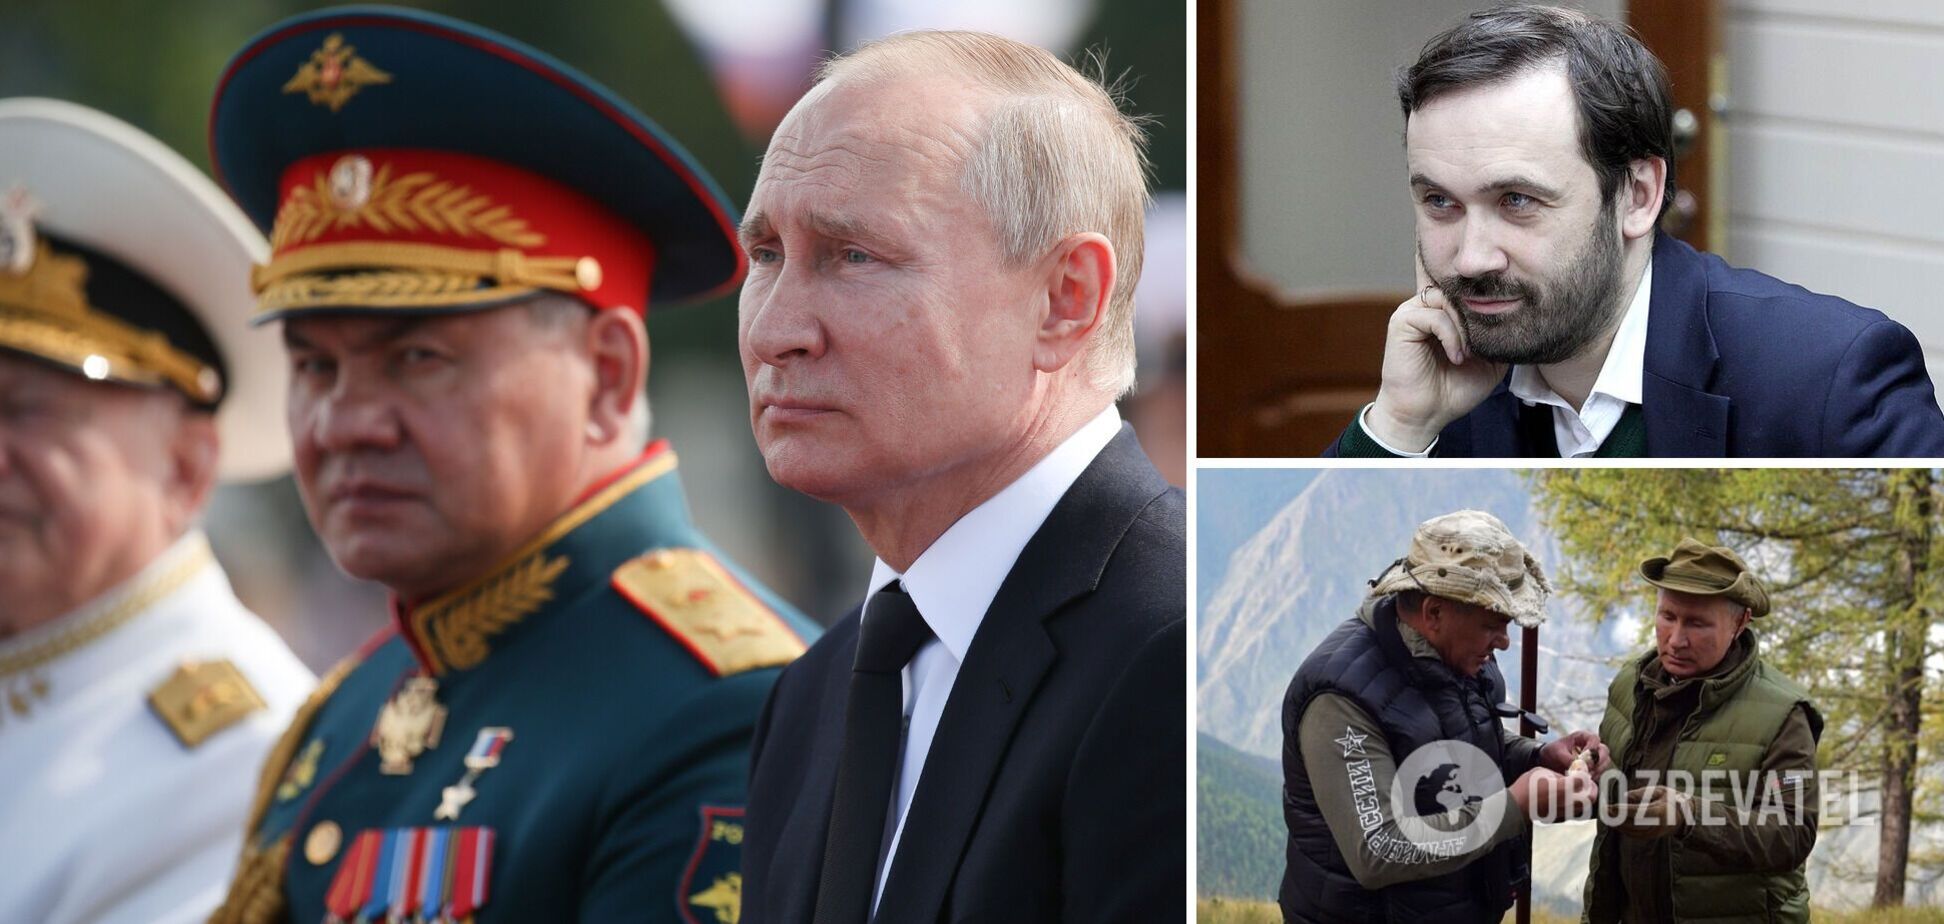 Пономарьов: вбити Путіна не є проблемою, особливо в бункері. Інтерв'ю